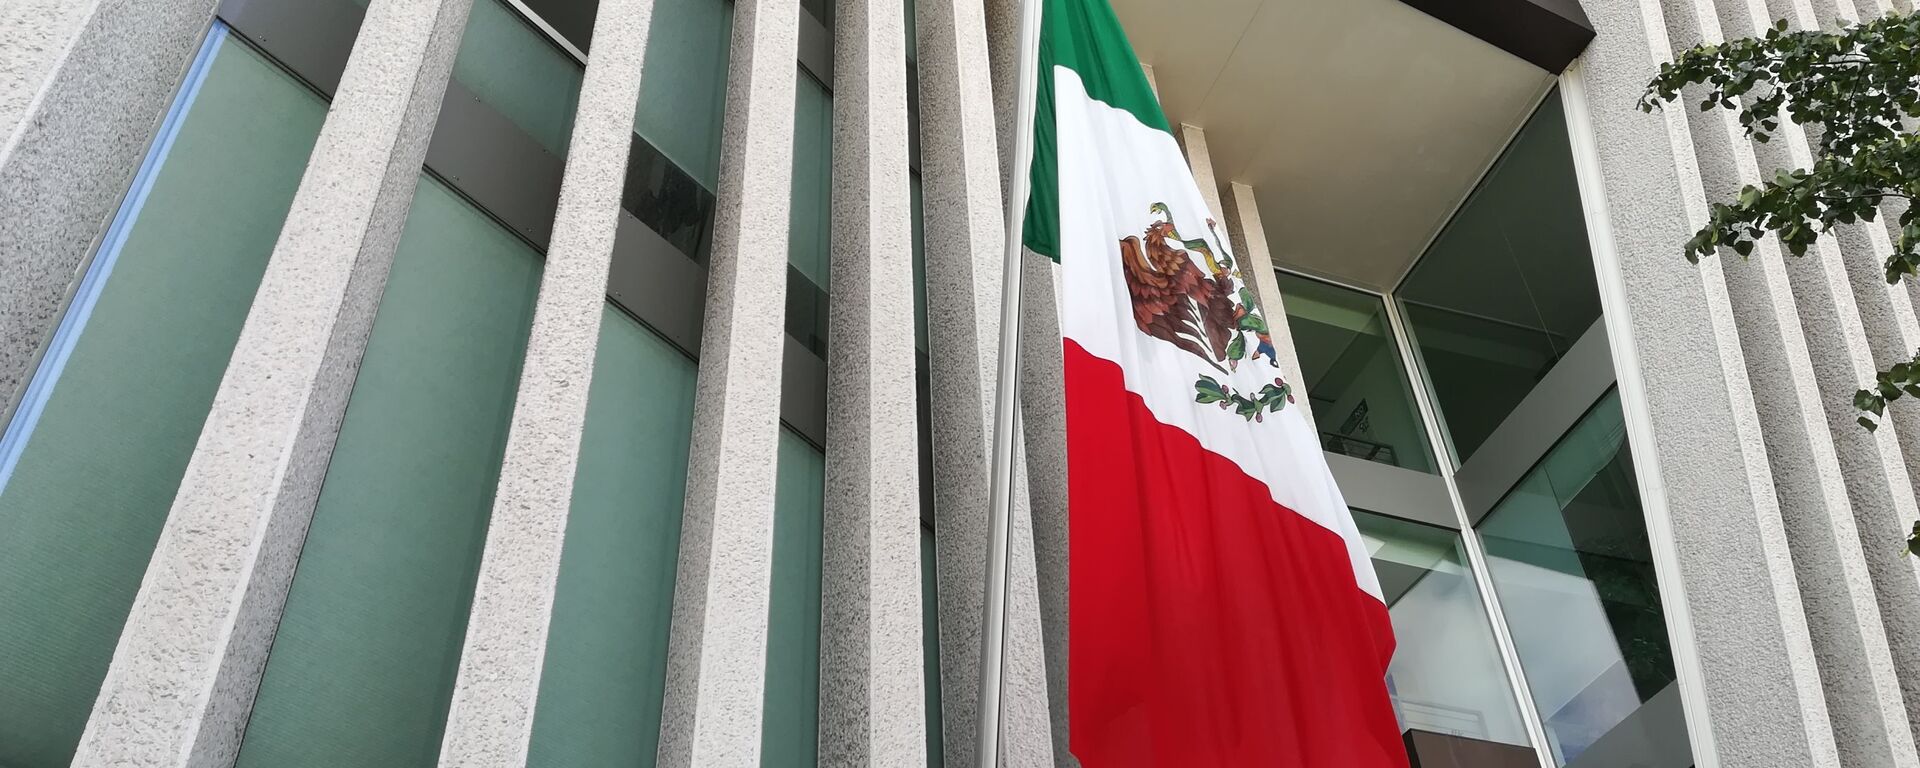 Bandera de México - Sputnik Mundo, 1920, 17.06.2021